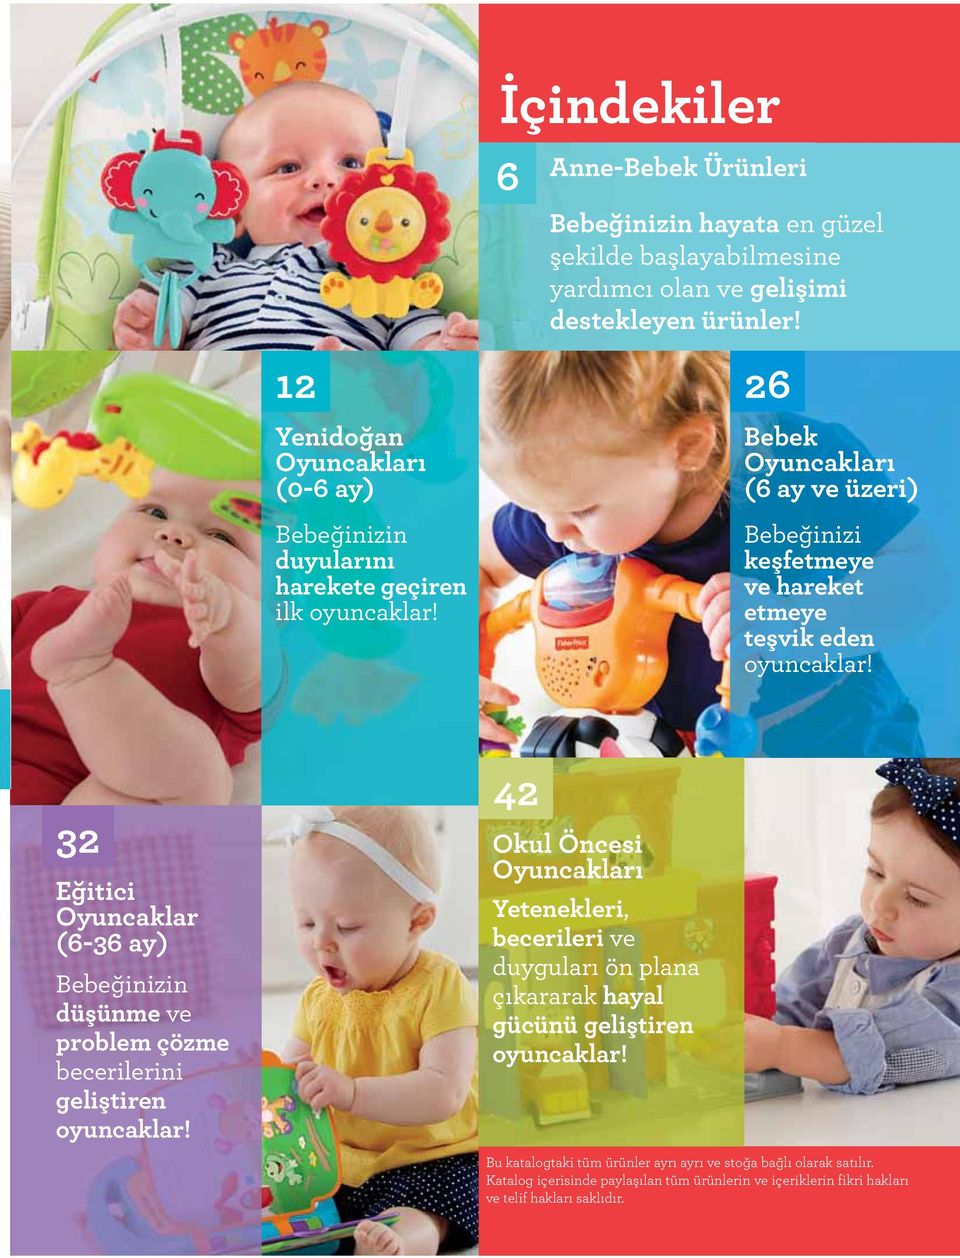 26 Bebek Oyuncakları (6 ay ve üzeri) Bebeğinizi keşfetmeye ve hareket etmeye teşvik eden oyuncaklar!